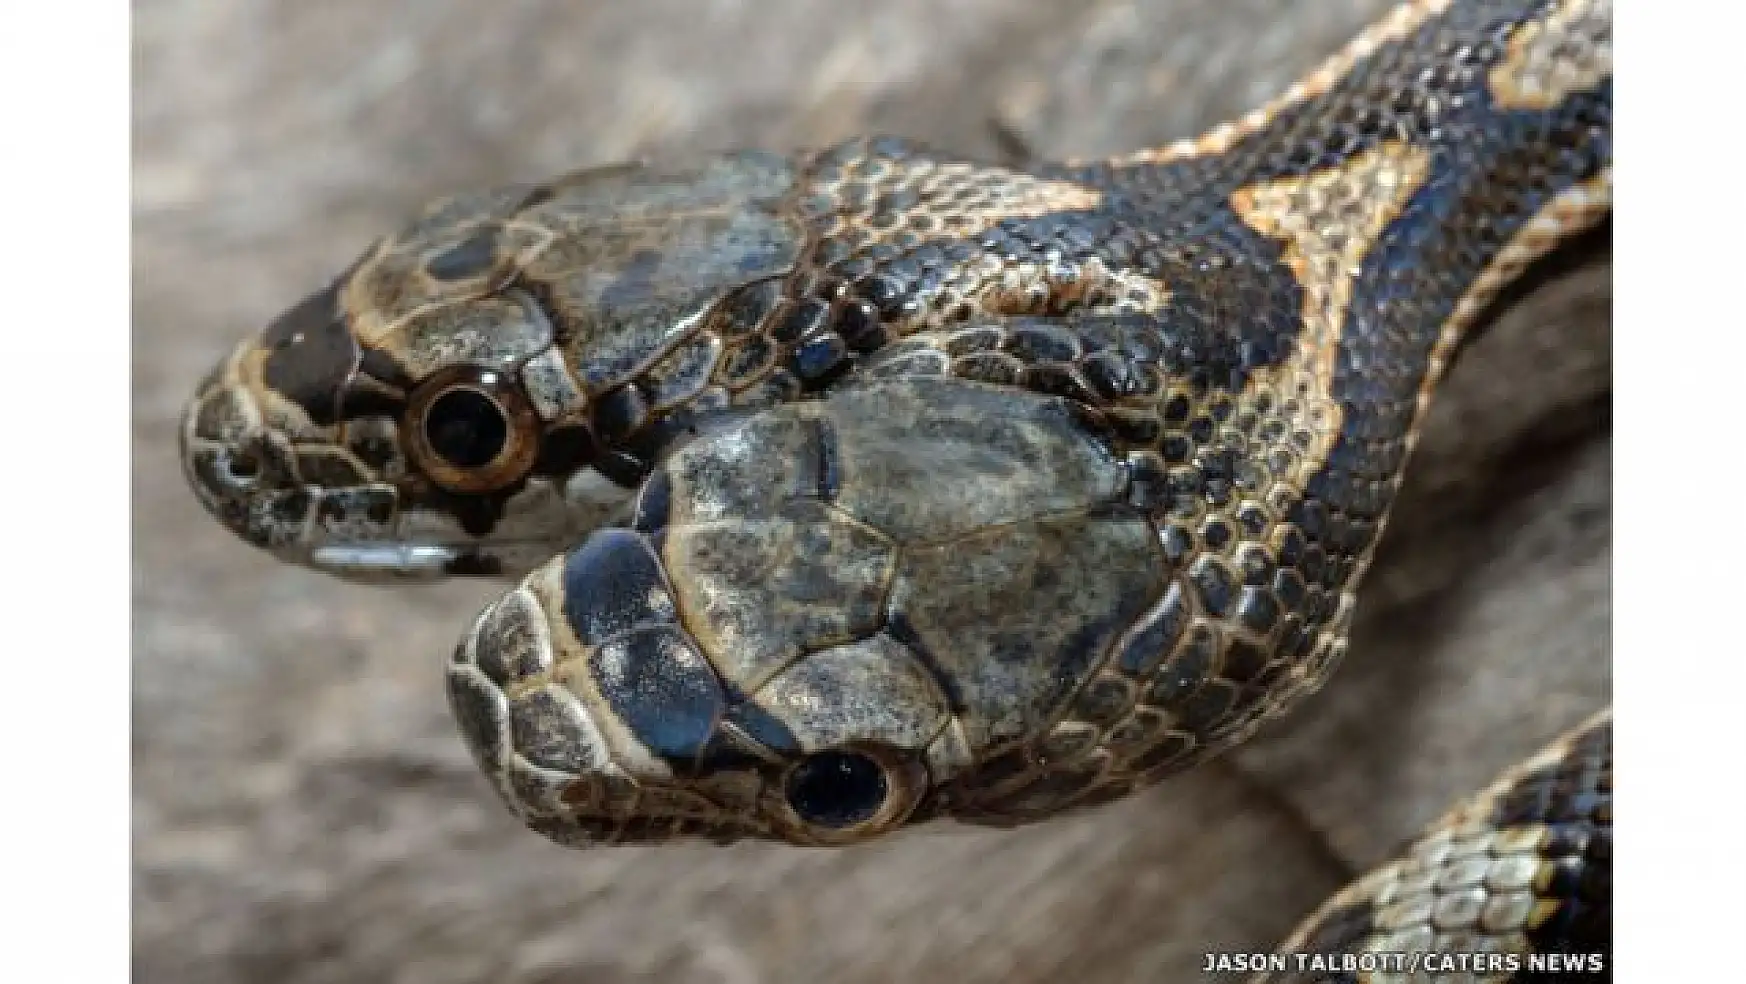 Türkiye'de görüntülenen çift başlı yılan korkuttu! Peki çift başlı yılan zehirli mi?